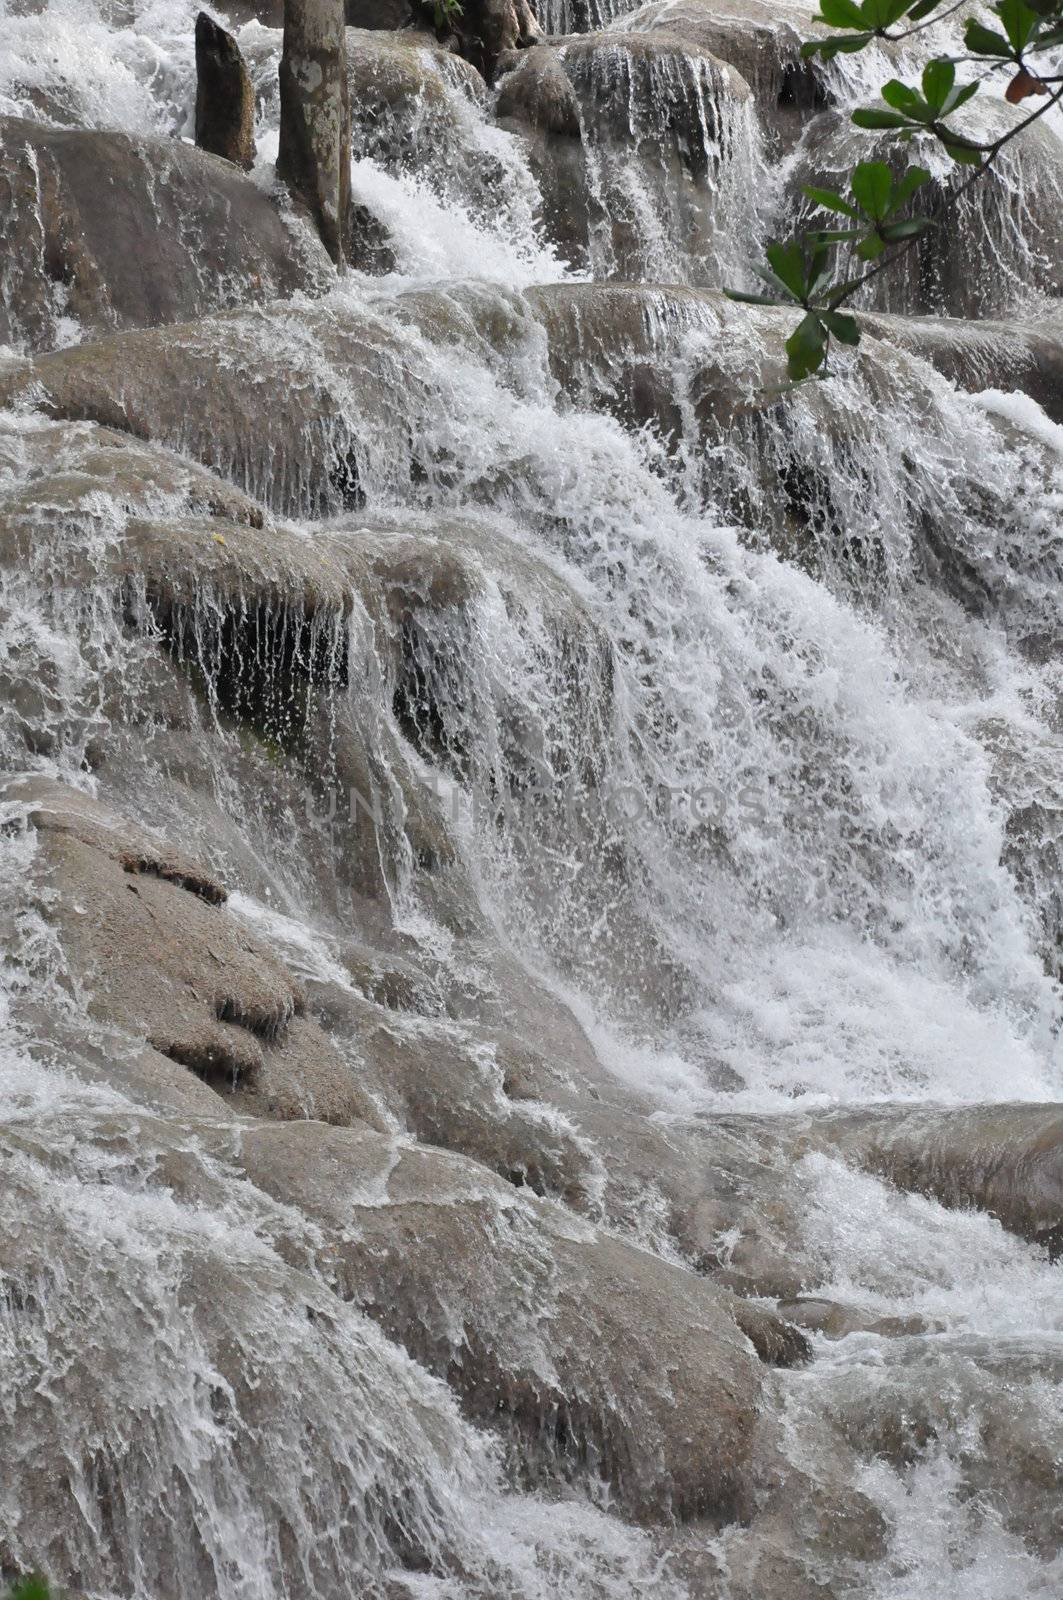 Dunn's Falls in Jamaica by sainaniritu